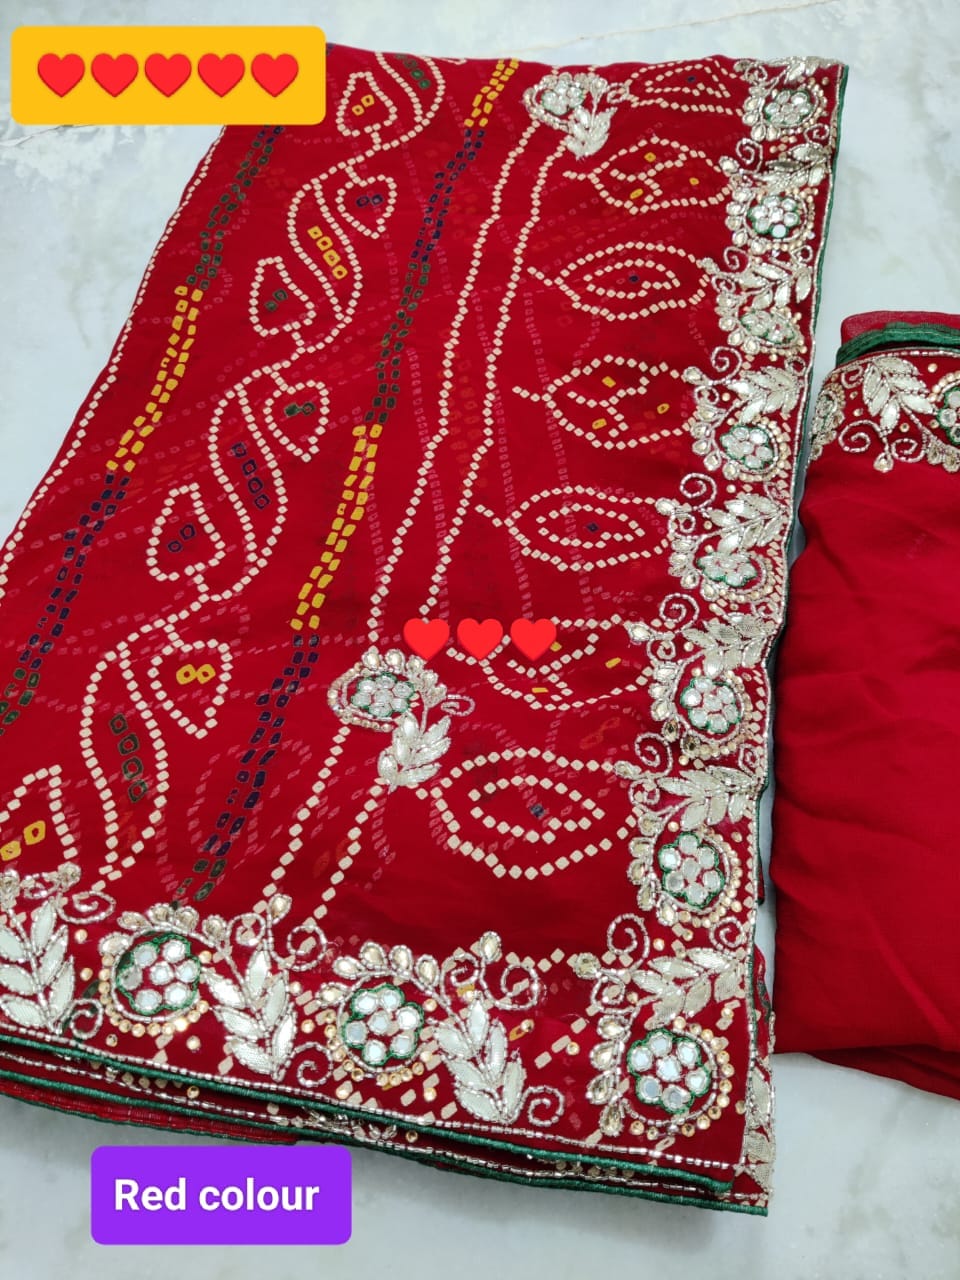 Jaipuri print jhorjt with running blouse Jaipuri traditional Bandej saree